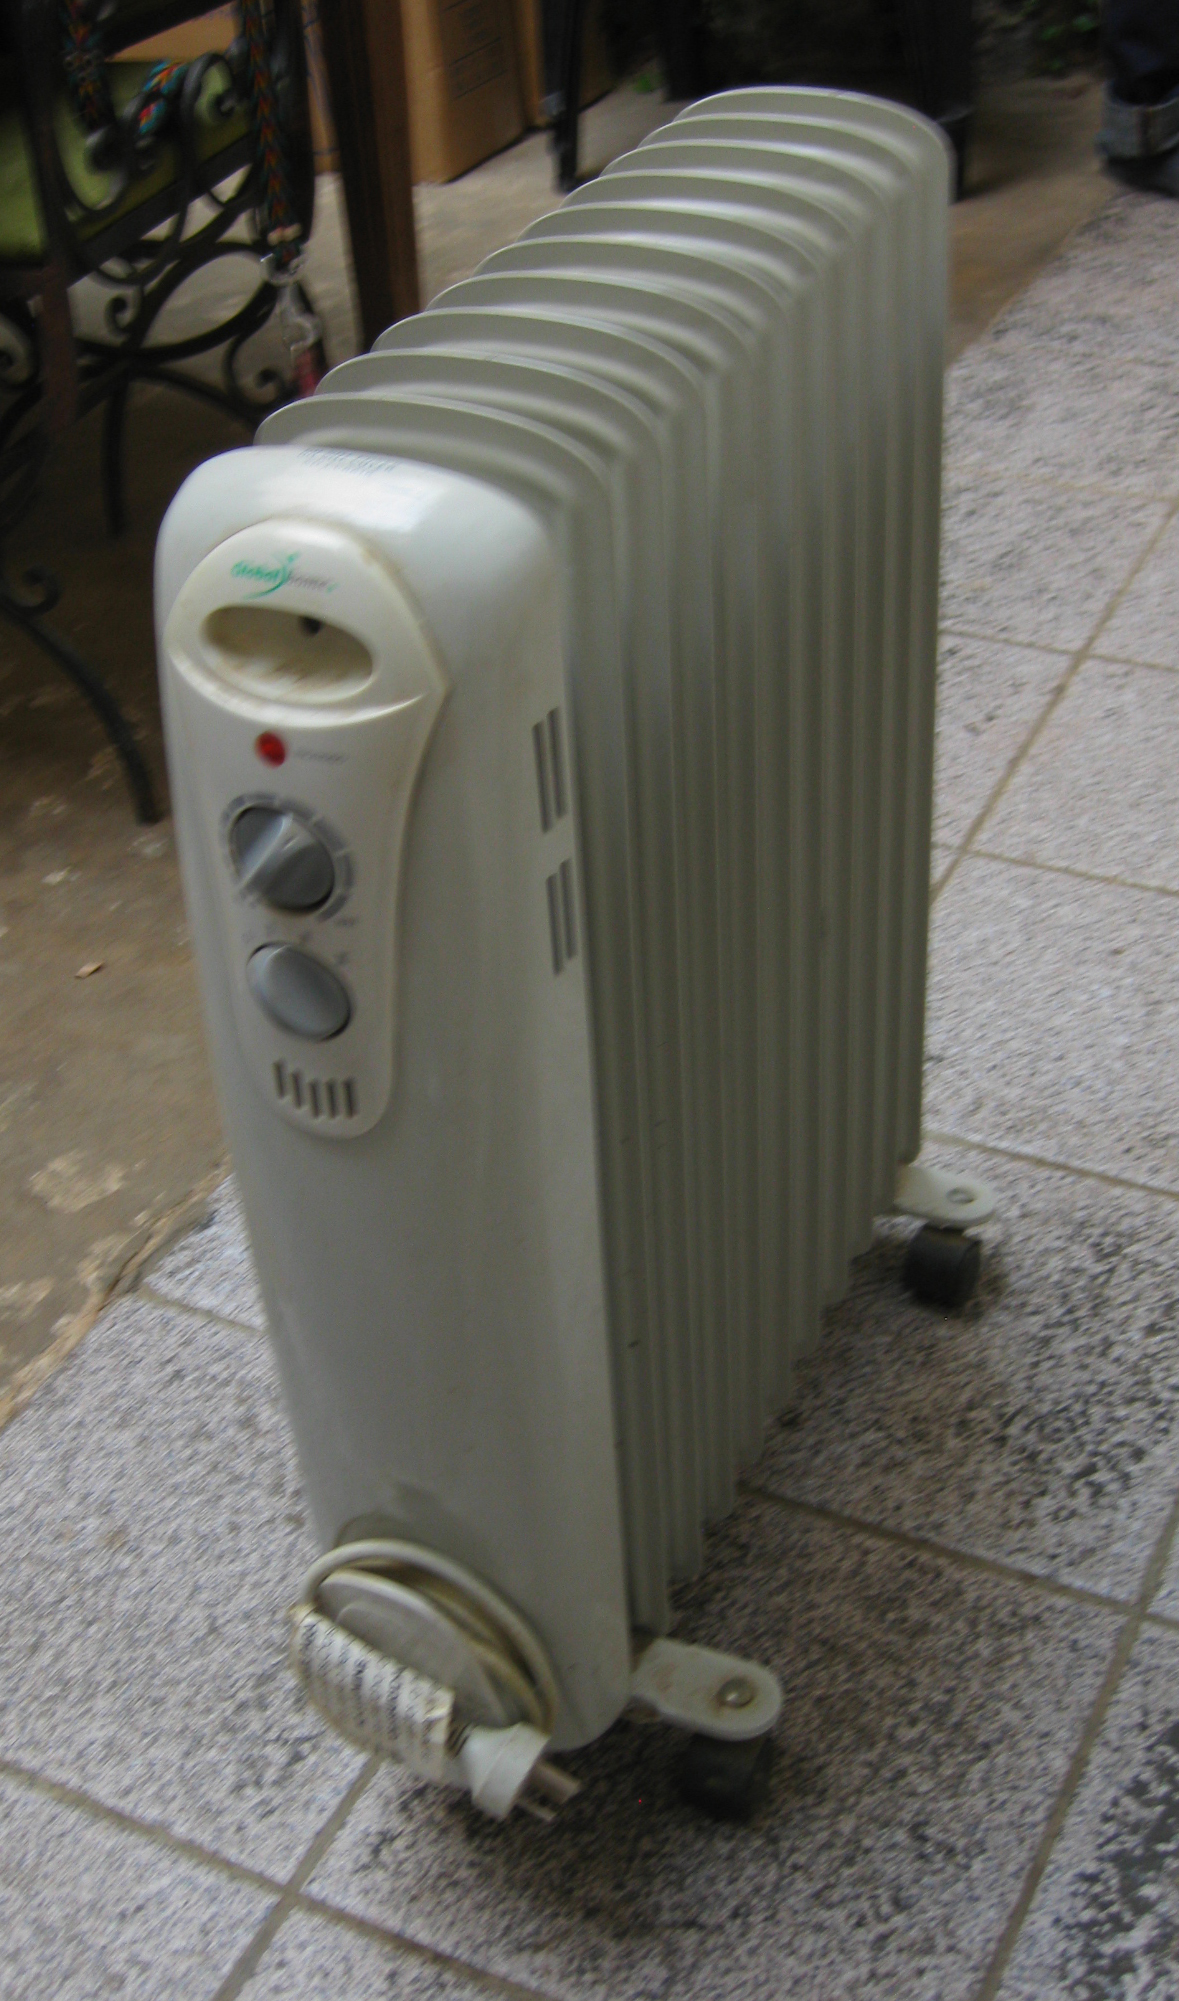 Do Electric Space Heaters Produce Carbon Monoxide?  